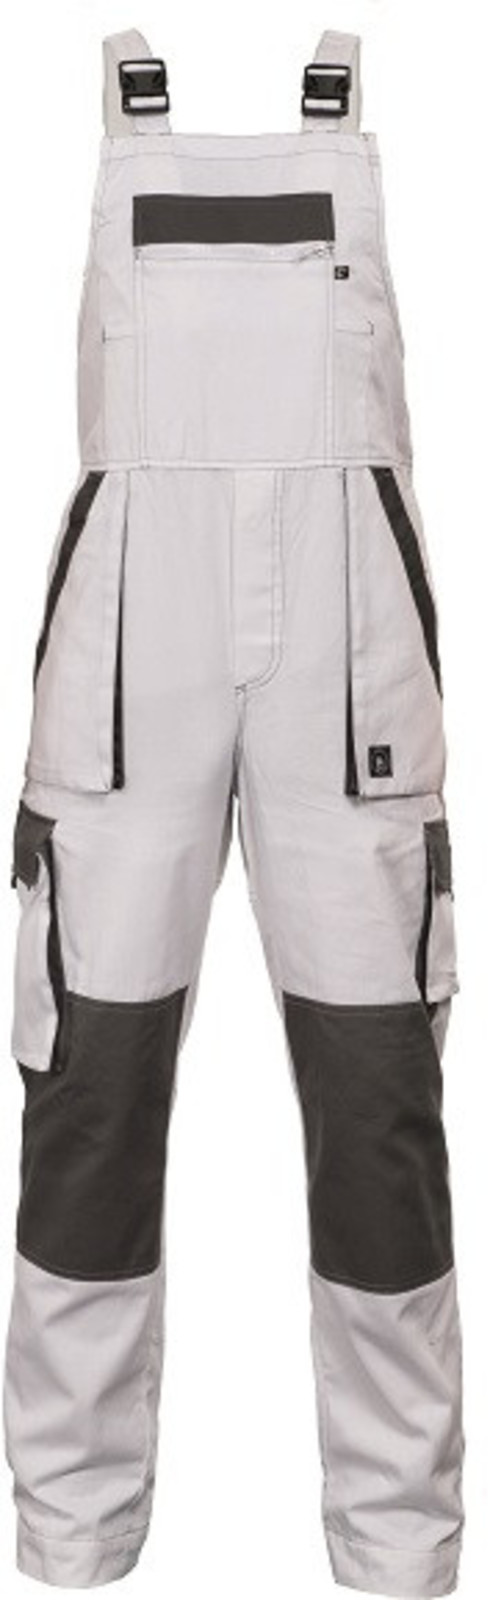 Tenšie bavlnené montérky na traky Max Summer - veľkosť: 56, farba: biela/sivá